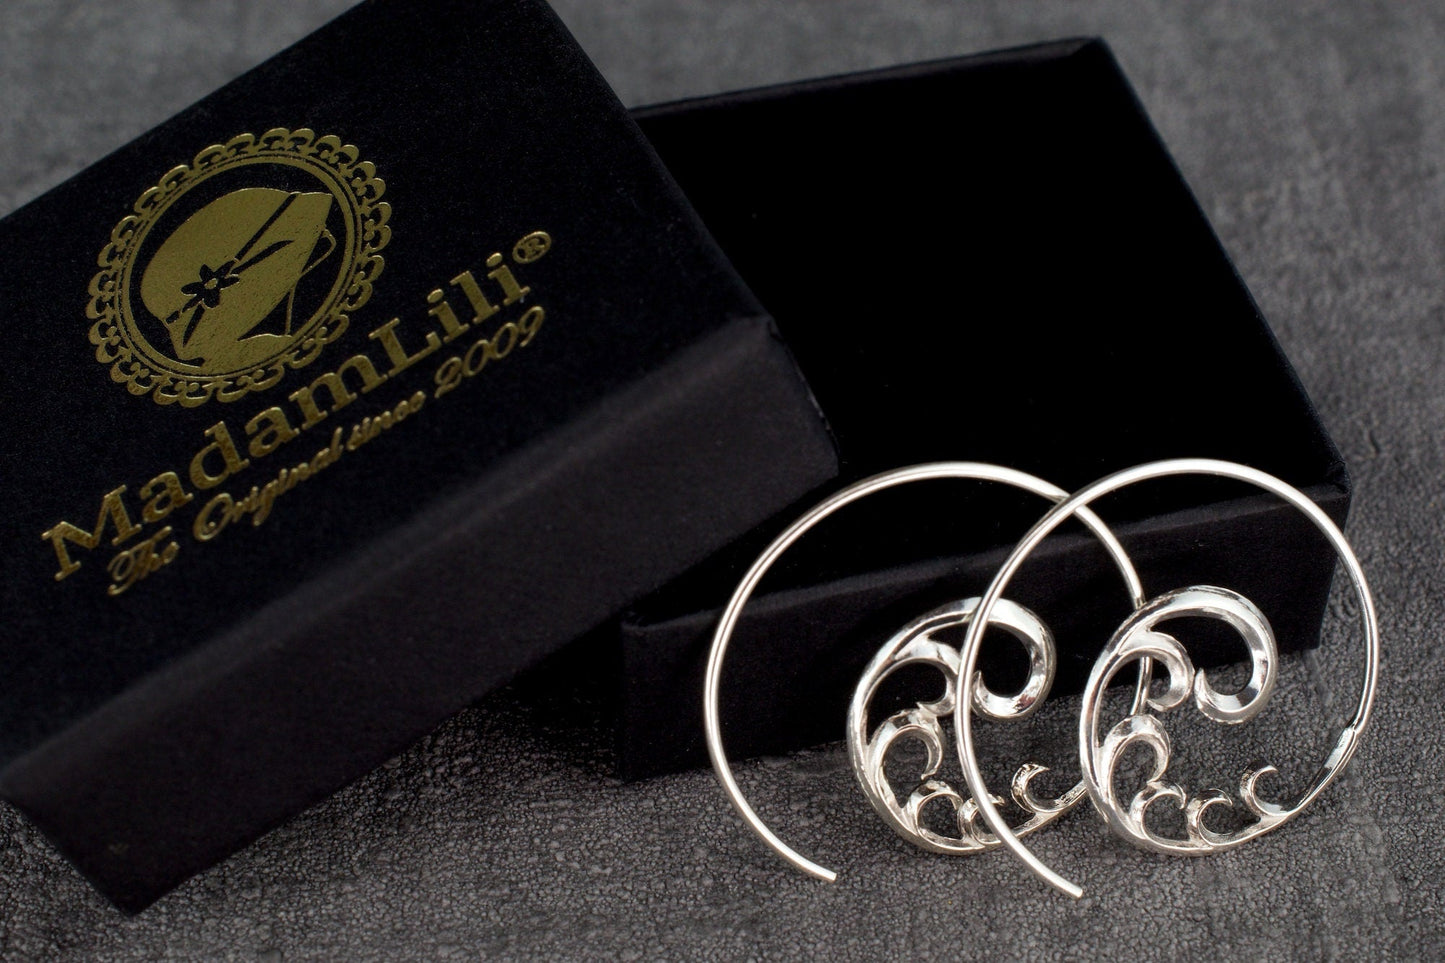 925 Sterling Silver "Ornament" Spiral Örhängen - Ear925-24